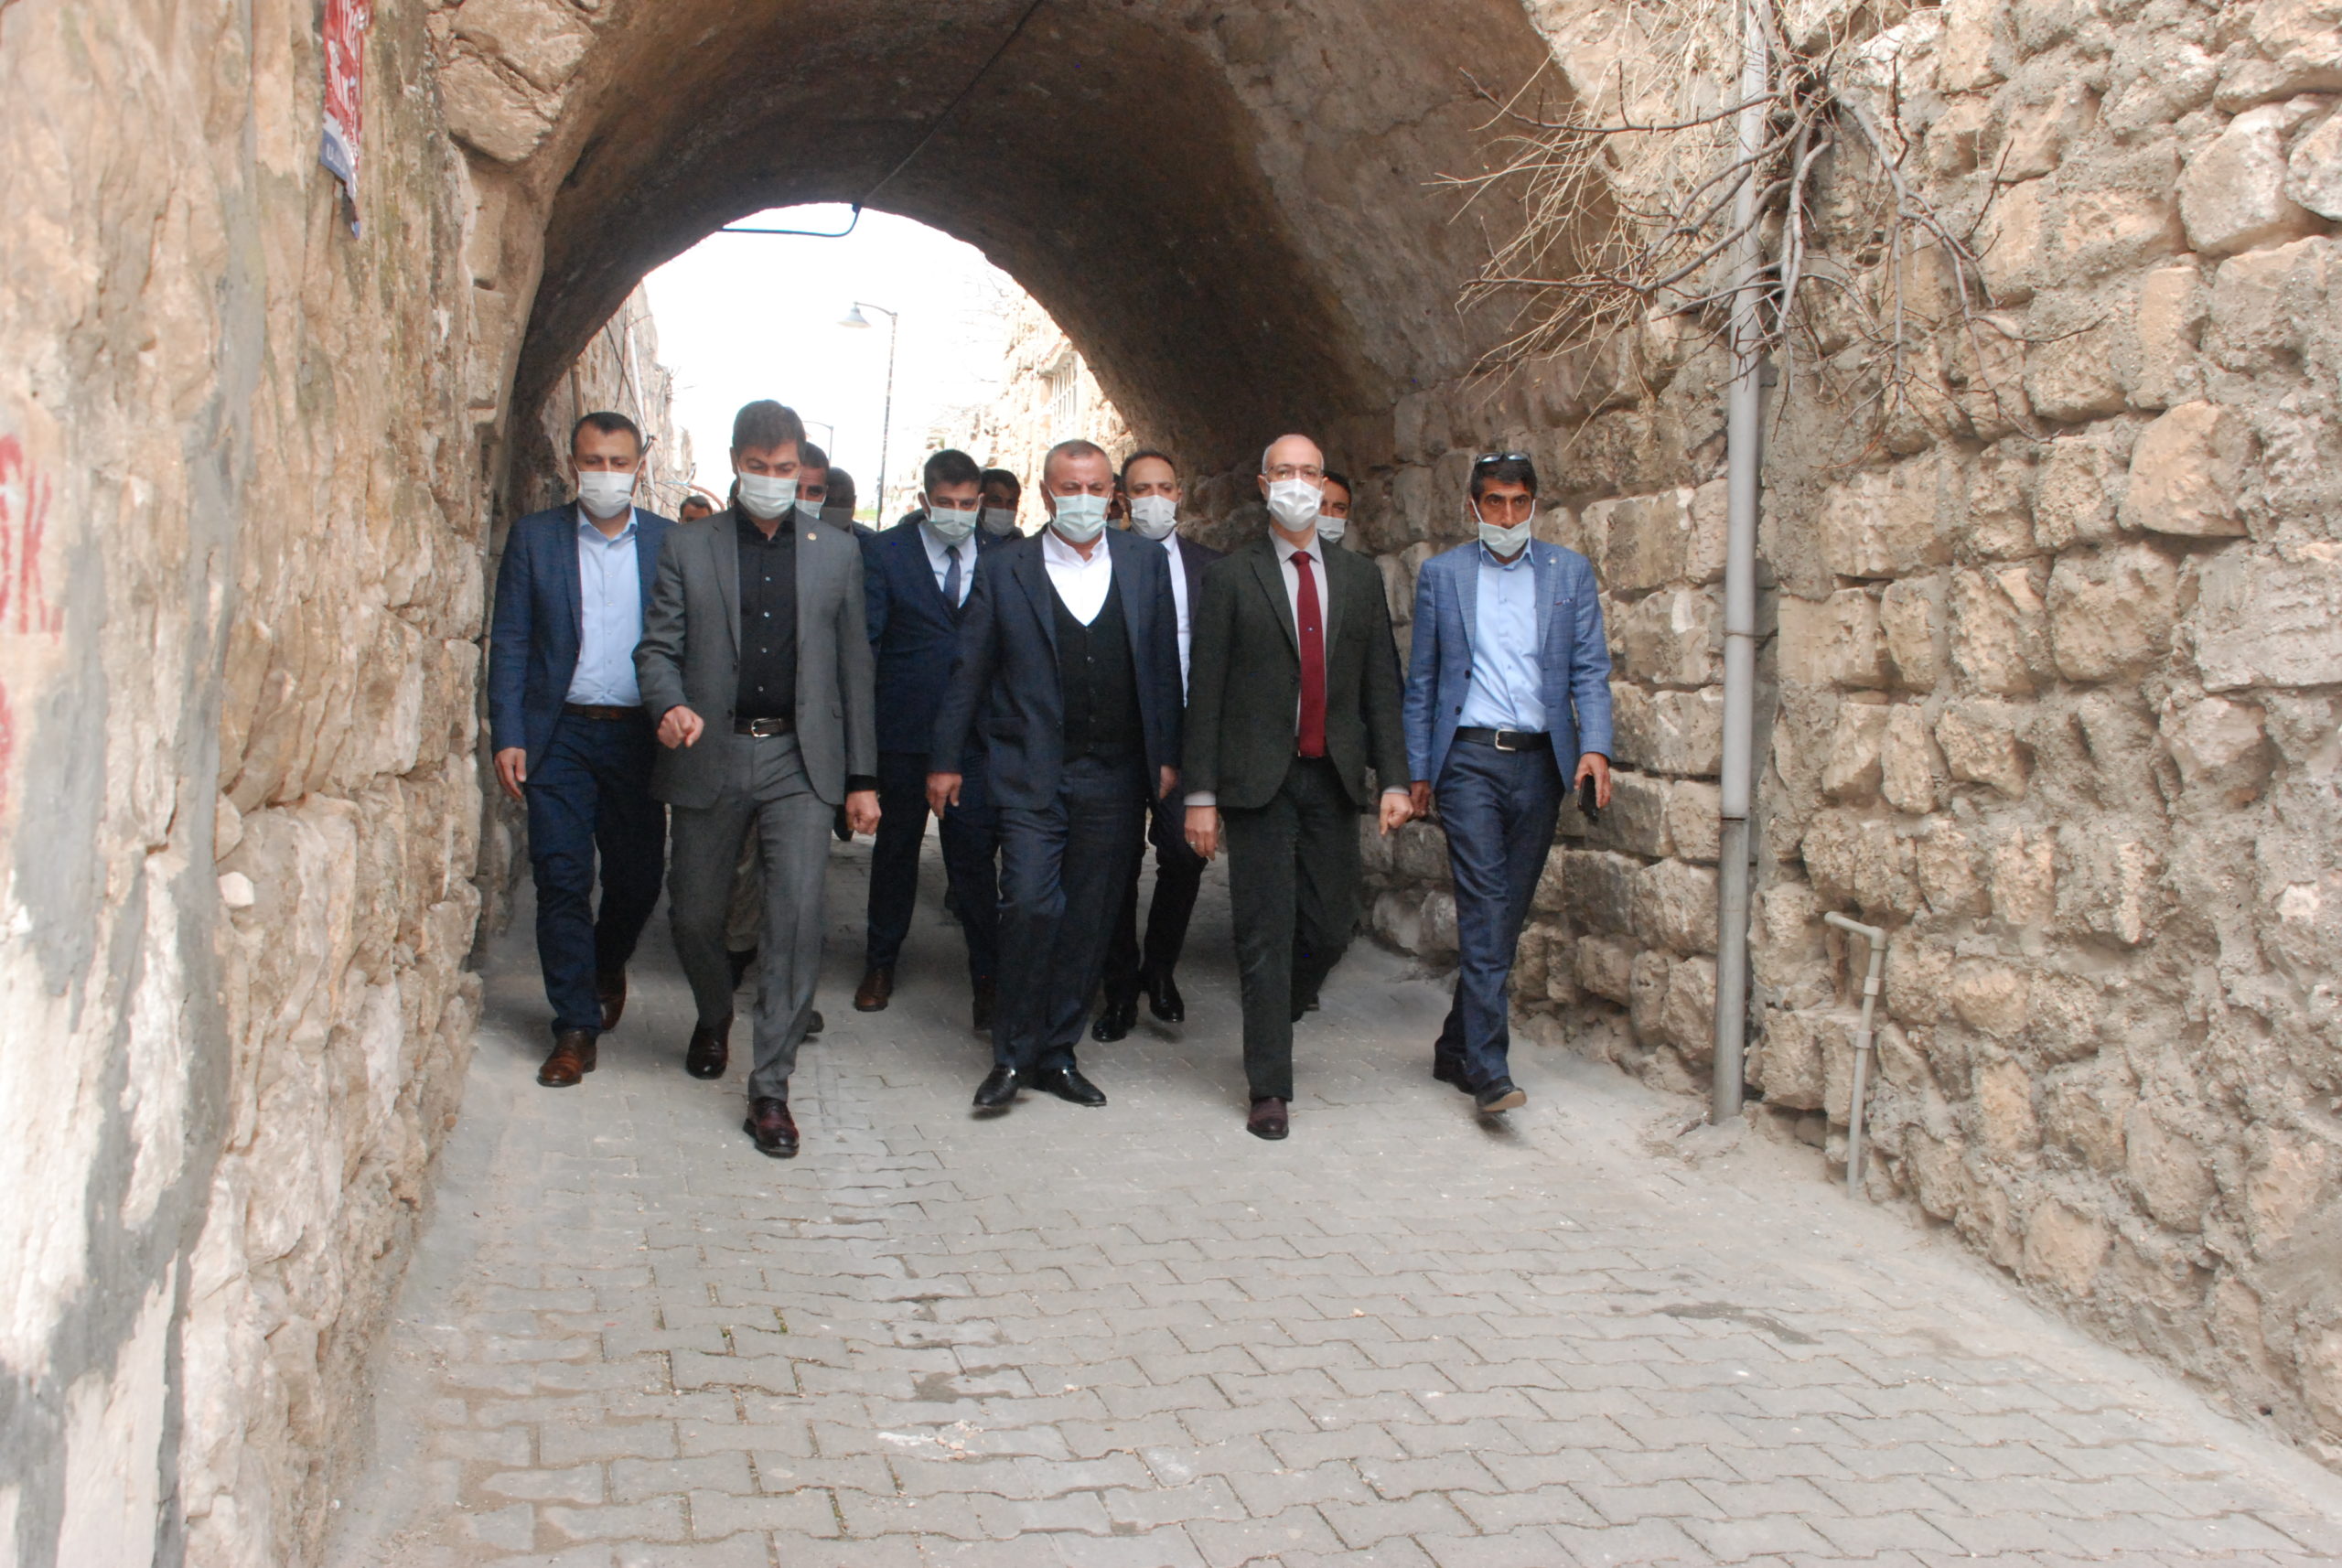  AK Partili Milletvekilleri, Midyat’ta Ziyaretlerde Bulundu